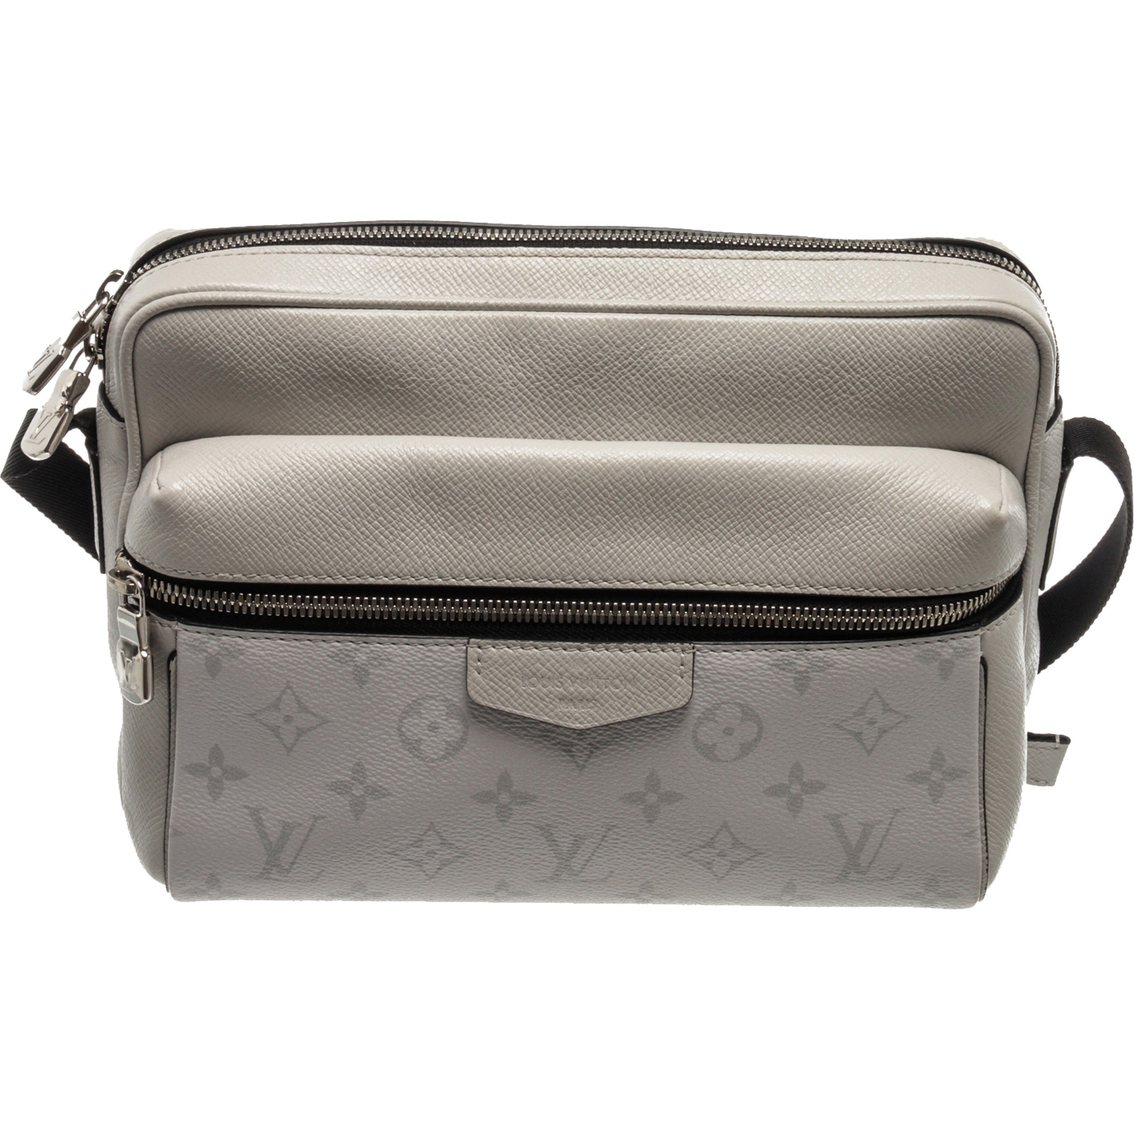 Louis Vuitton men's messenger, purse - clothing & accessories - by